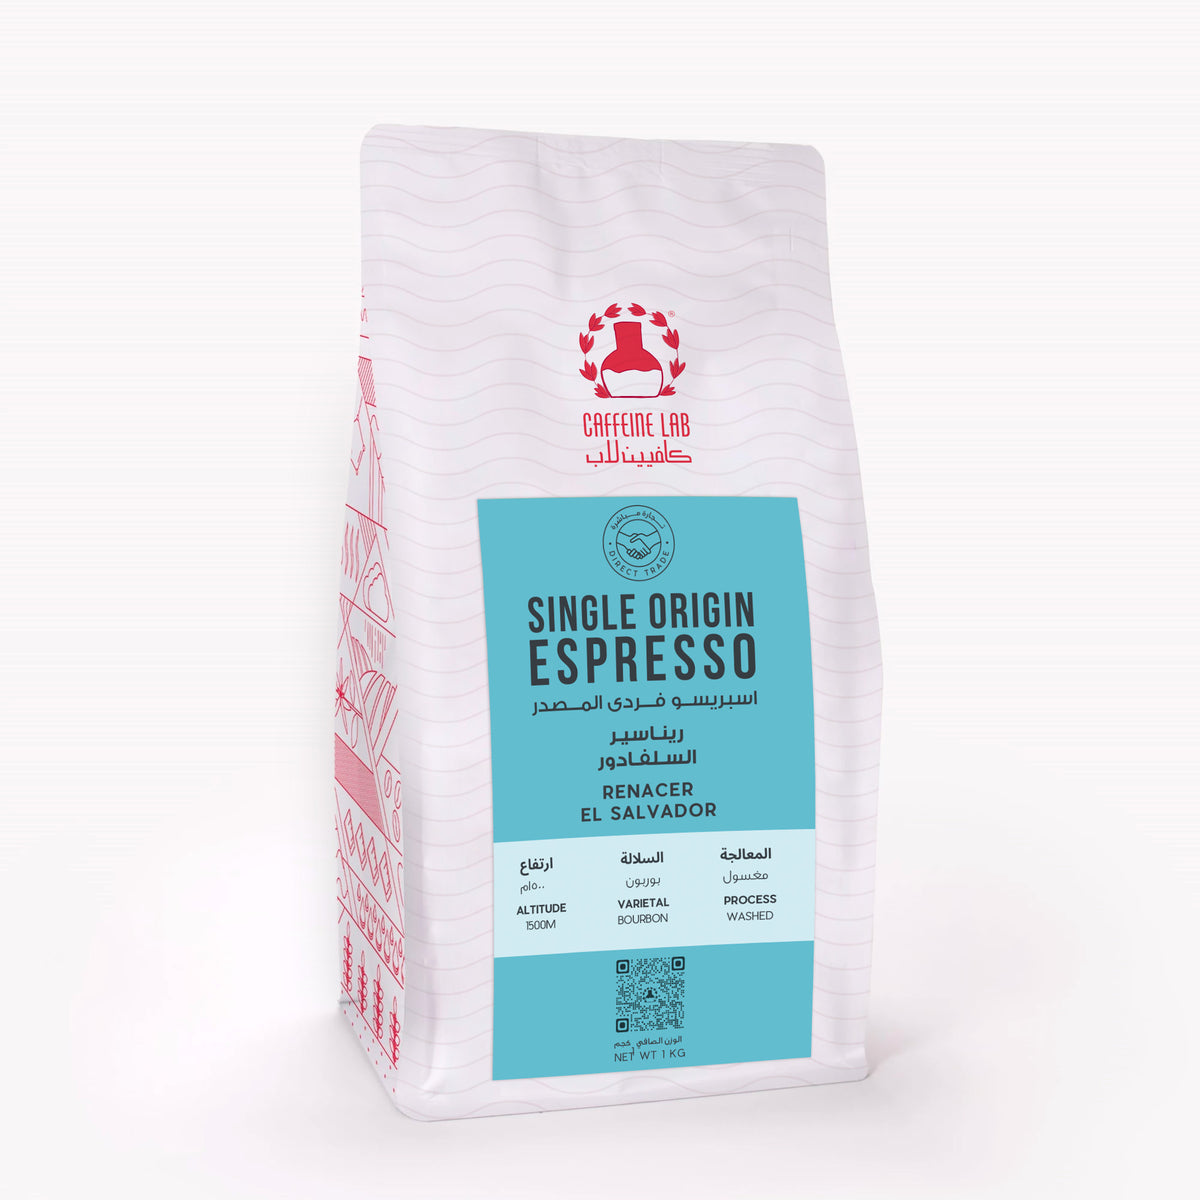 Renacer El Salvador - Single Origin Espresso